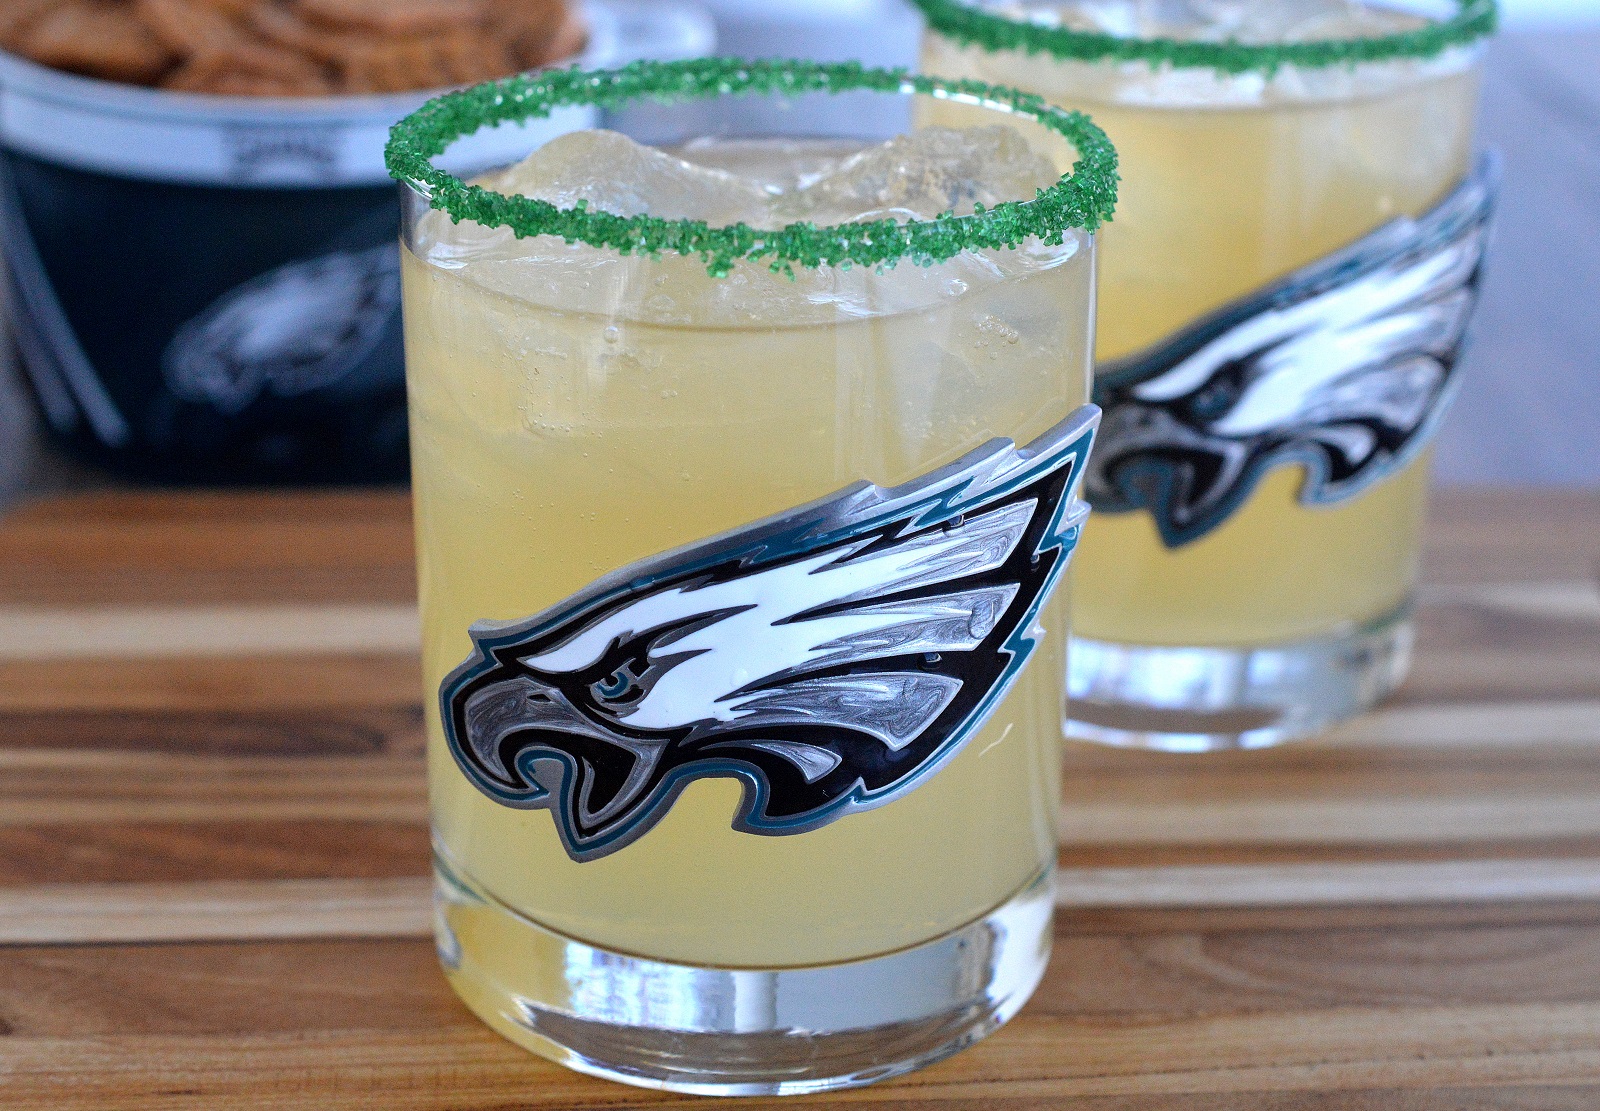 The Philadelphia Eagles Limebacker Cocktail